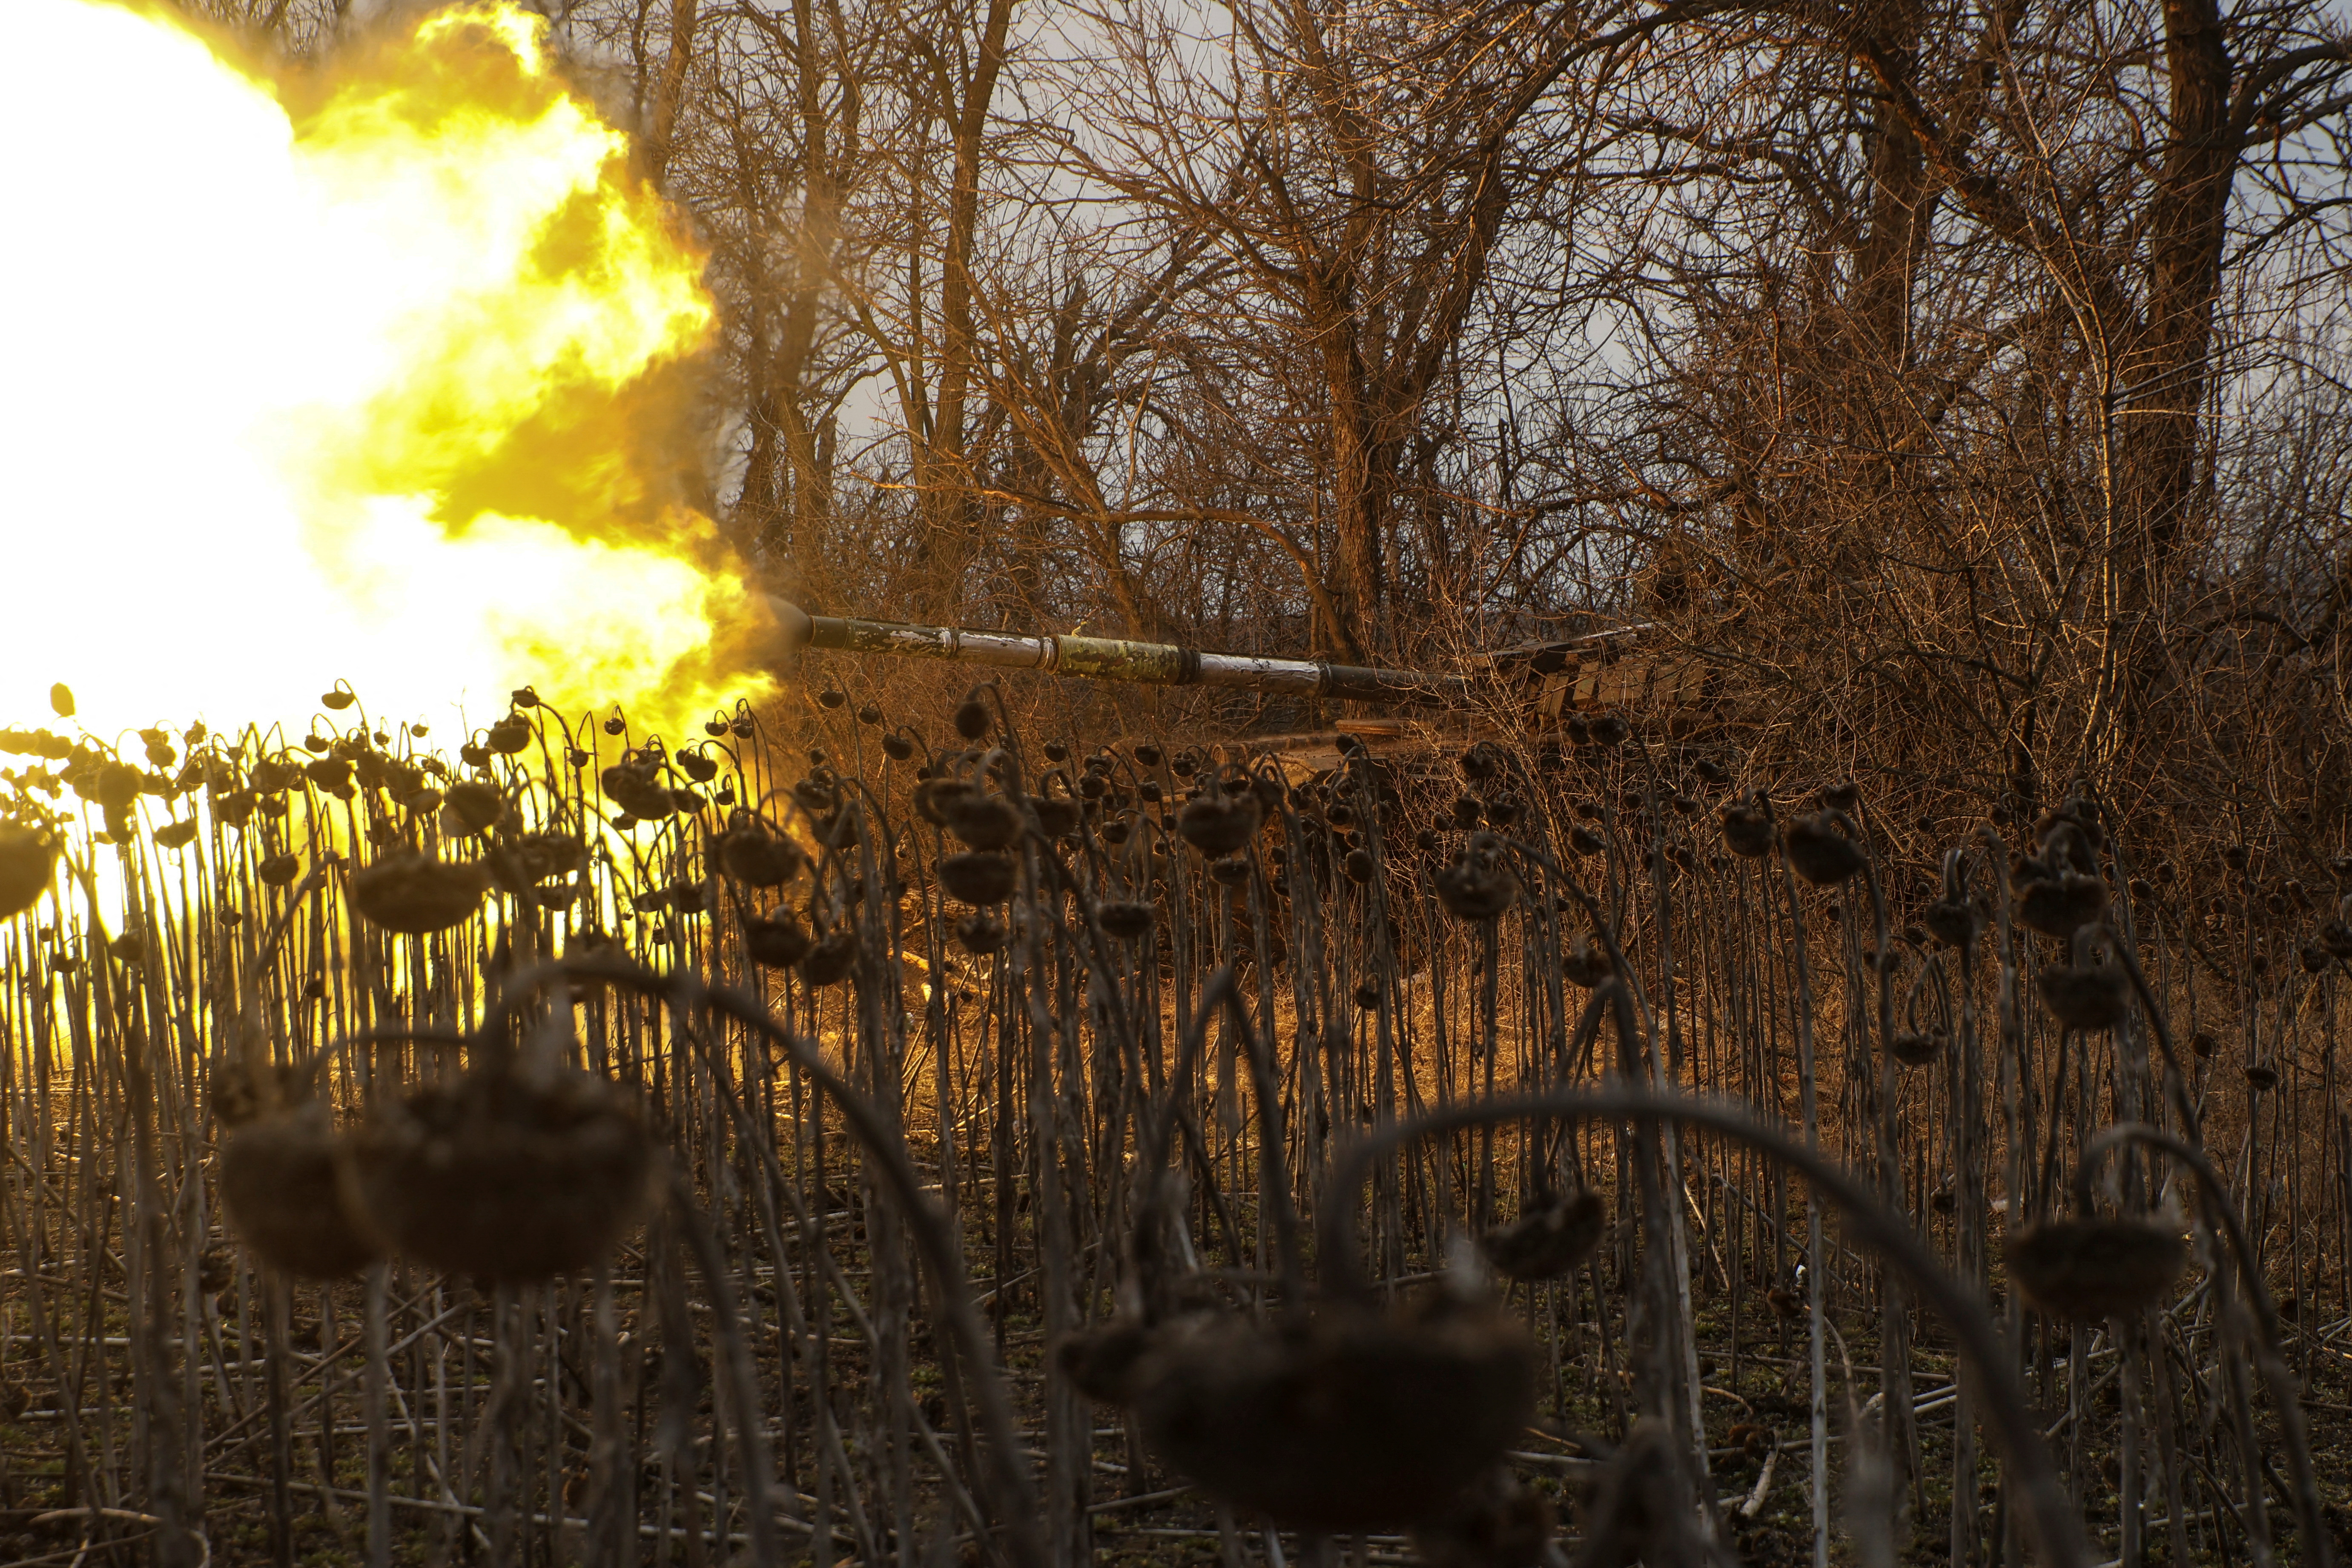 Ukrainian servicemen fire from a tank towards Russian troops near the frontline town of Bakhmut